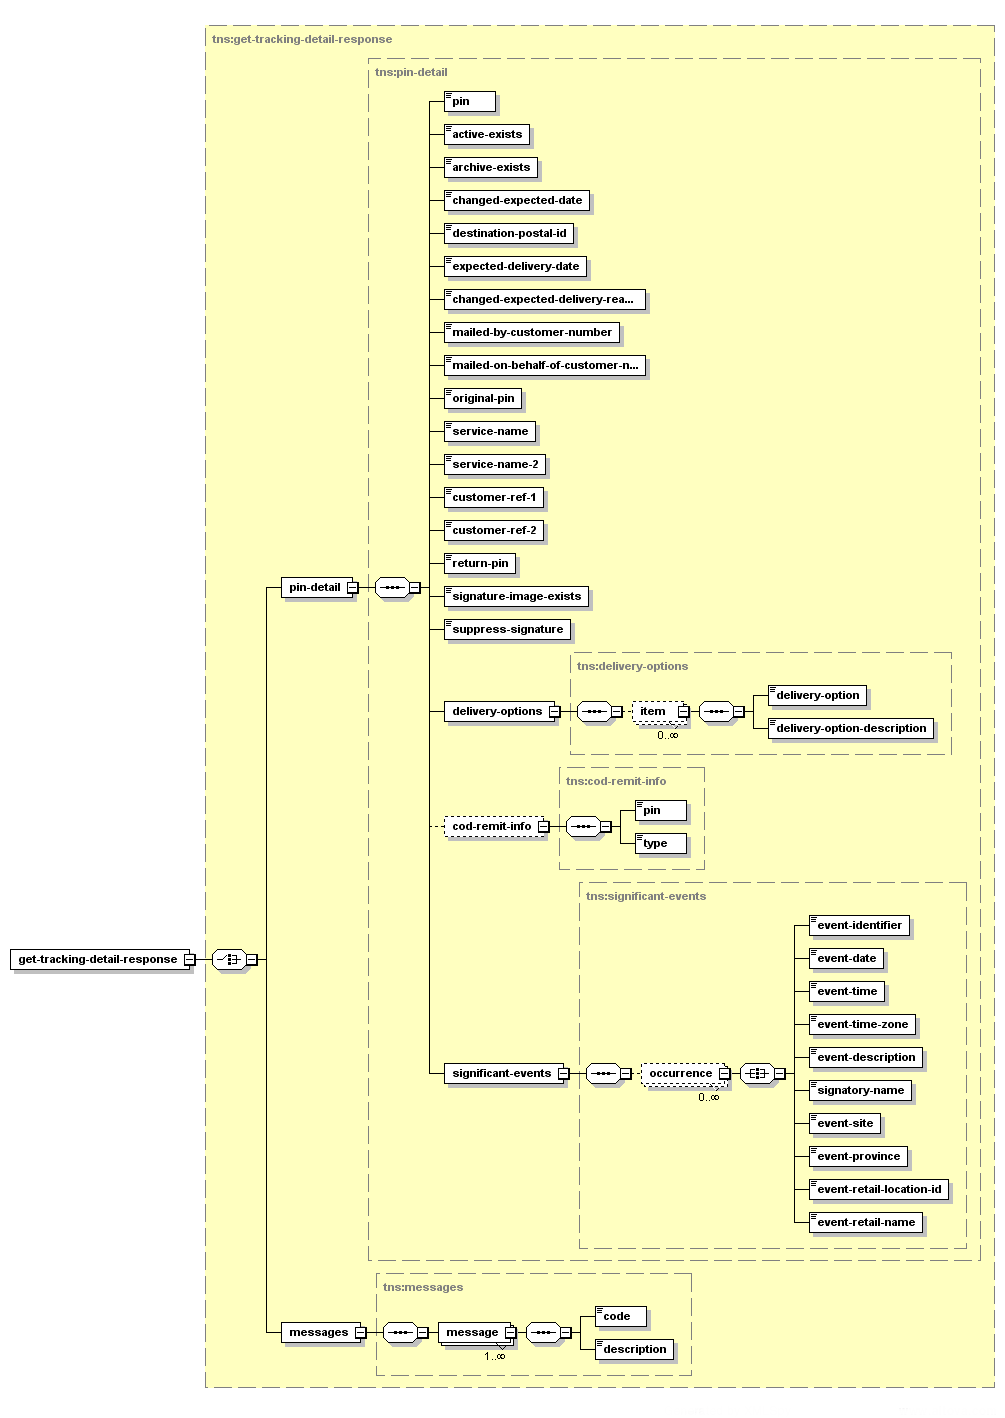 Obtenir les détails de repérage – Structure de la réponse XML